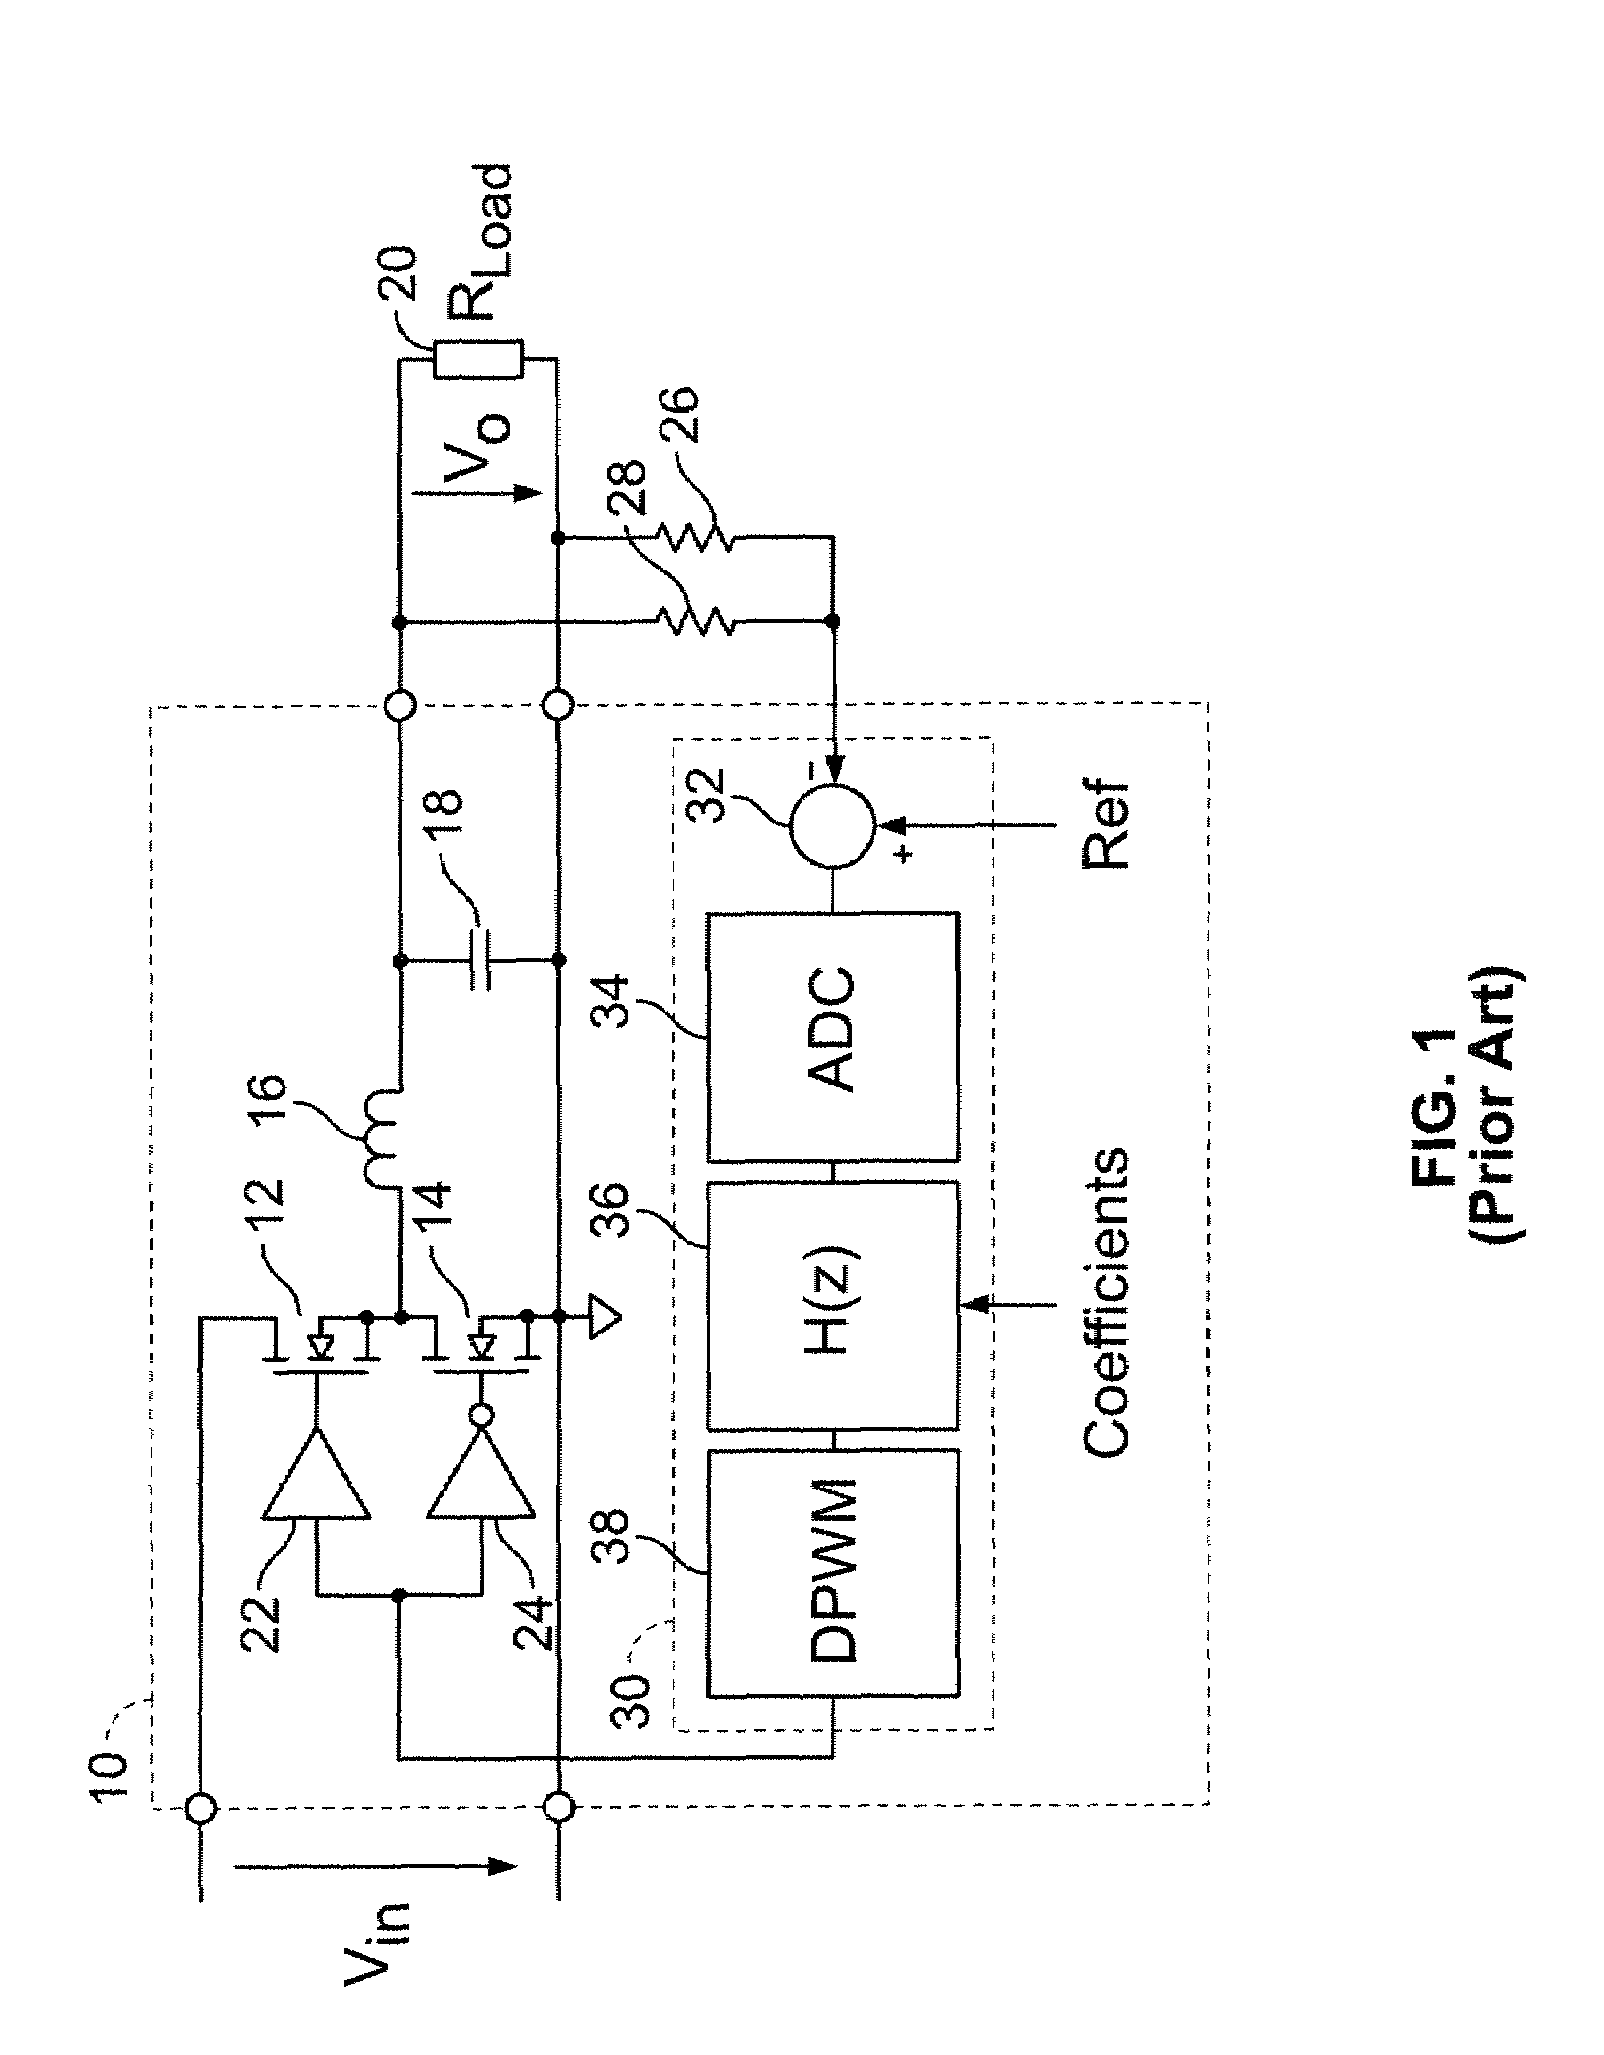 Digital double-loop output voltage regulation